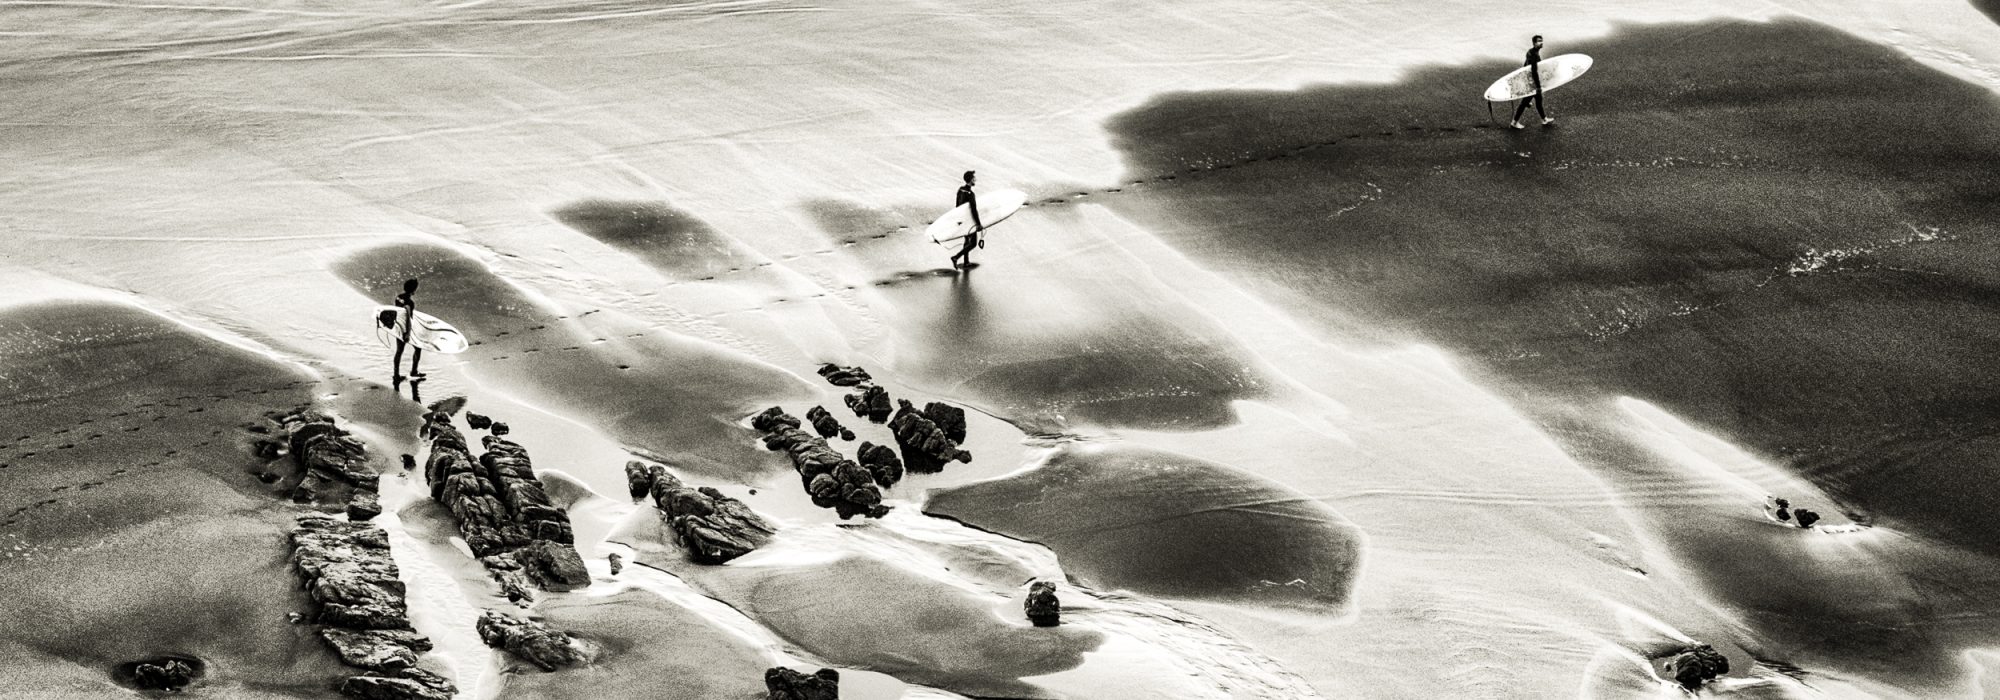 Millor fotografia d'activitats d'aigua: Surf en los Quebrantos (Asturias) de Jose Luis Neira.